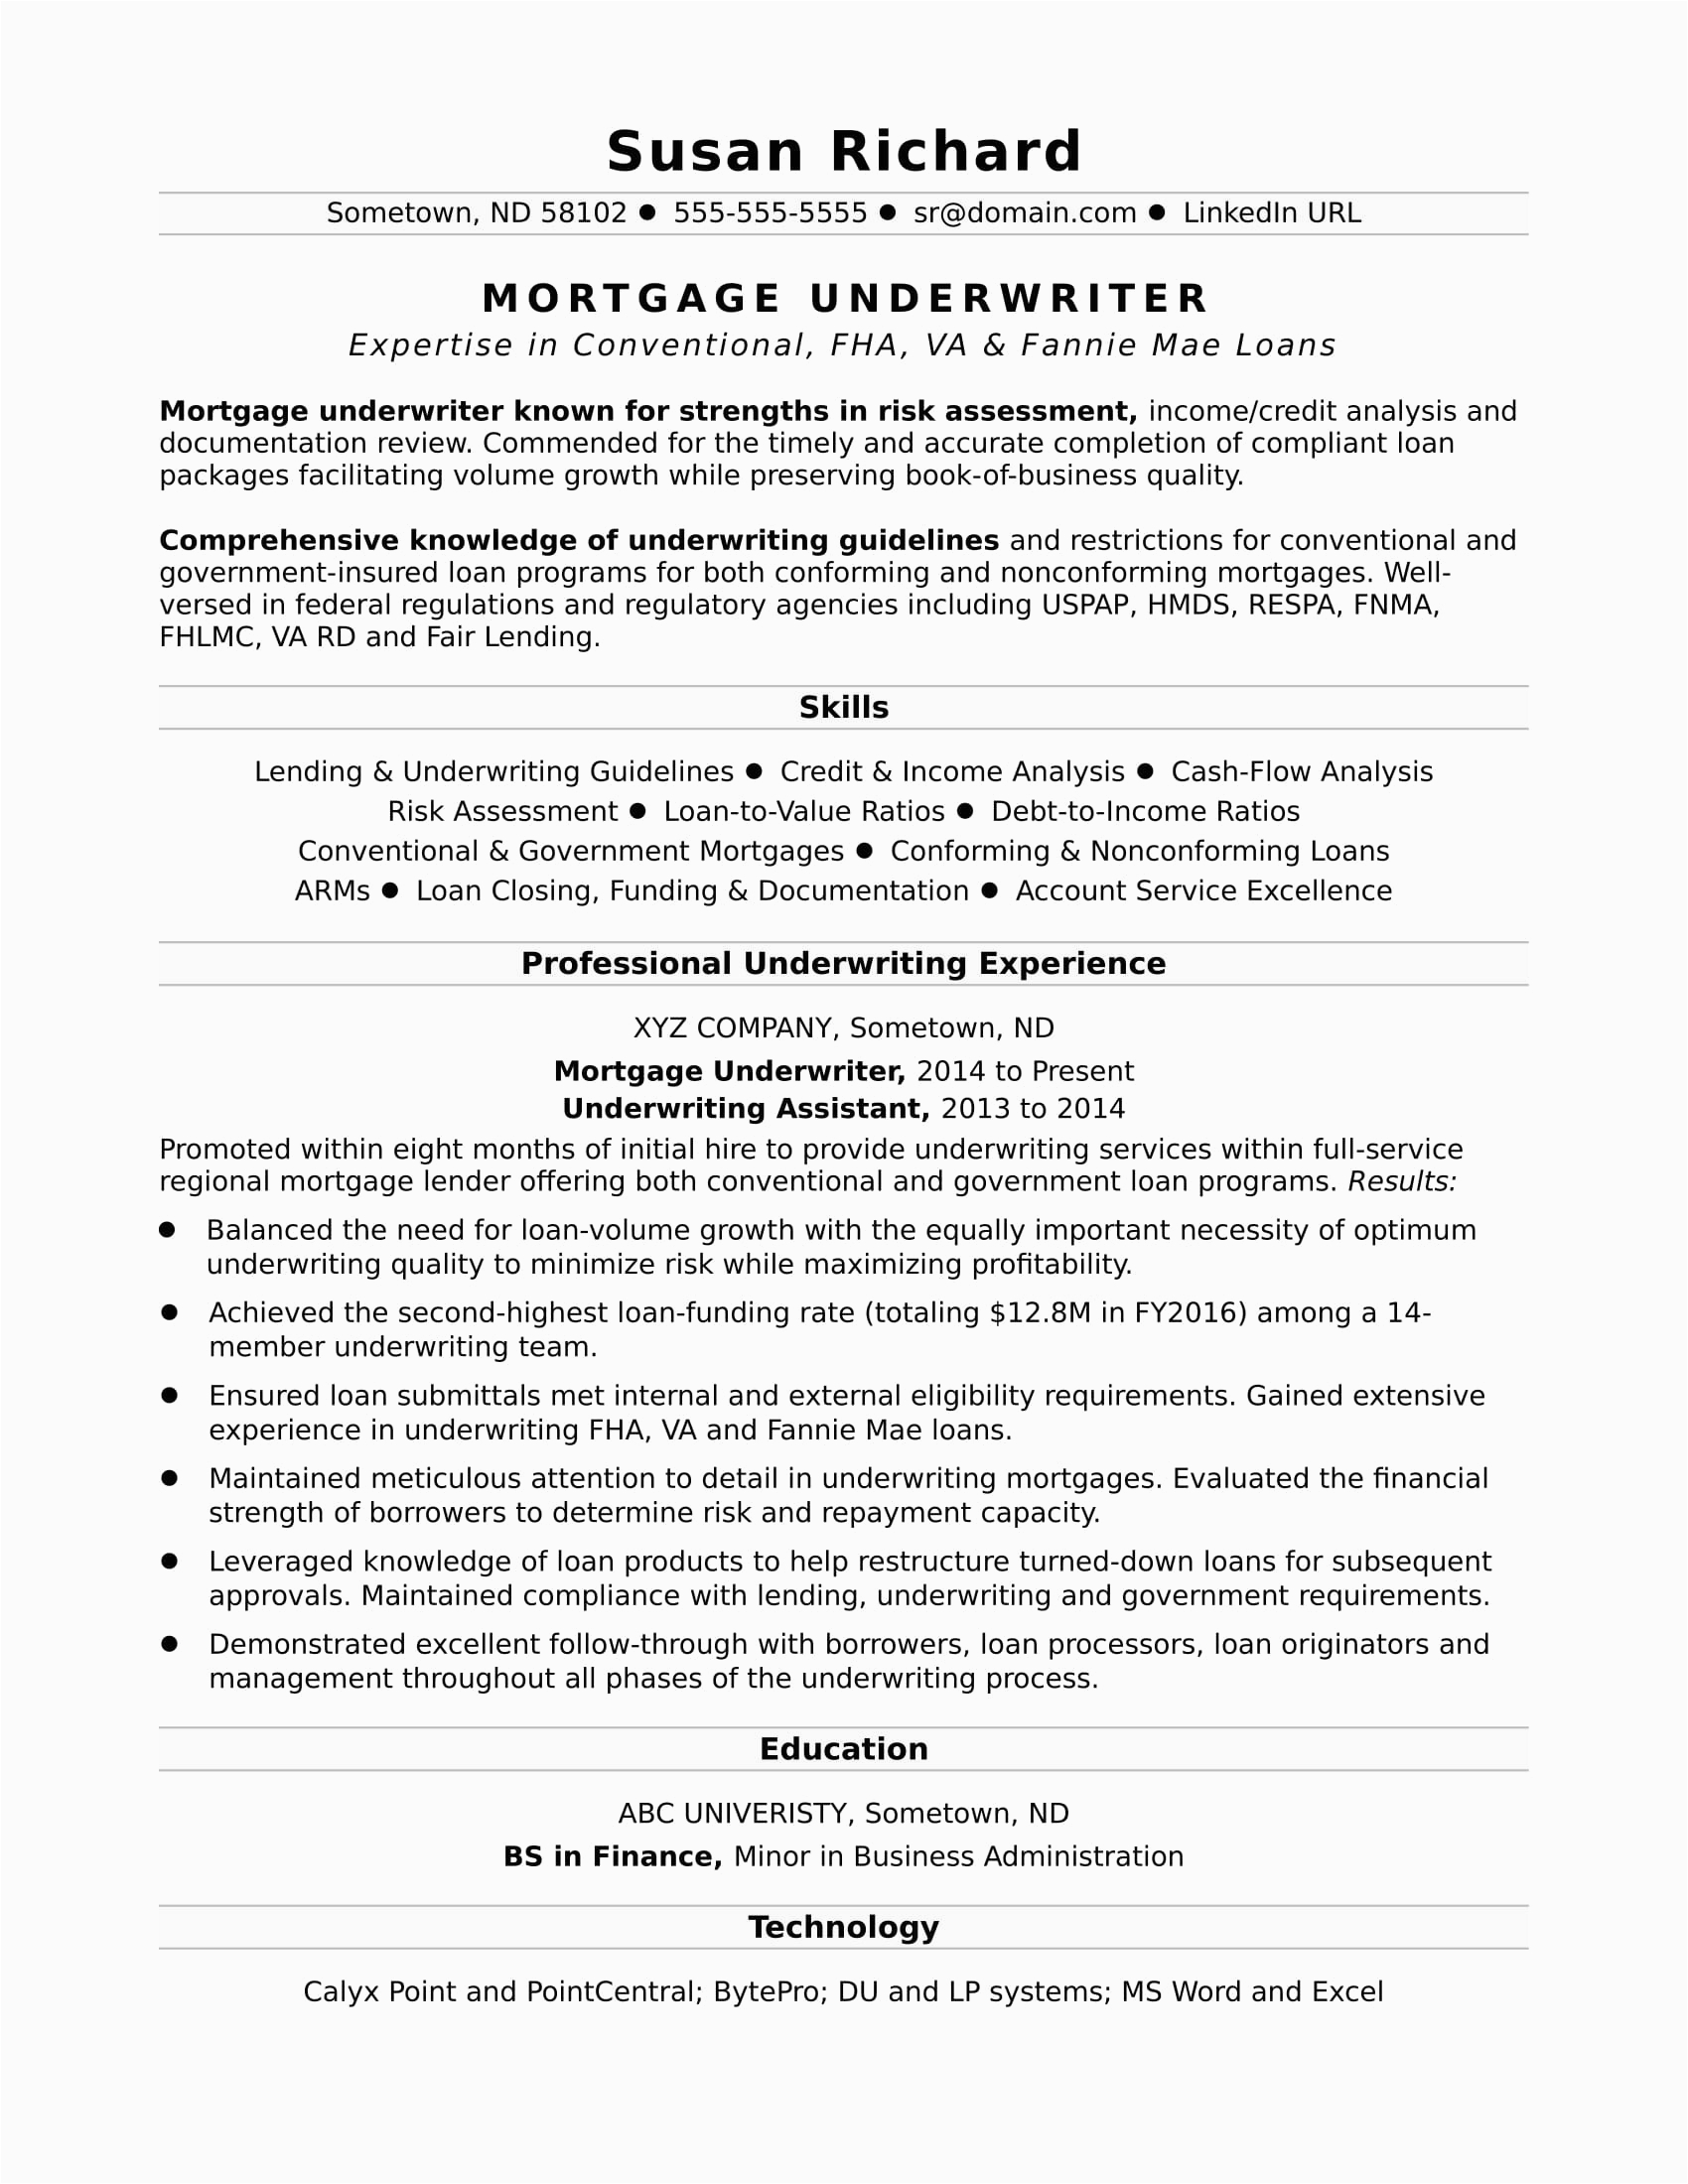 Sample Resume for Insurance Underwriter assistant Mortgage Underwriter Resume Sample